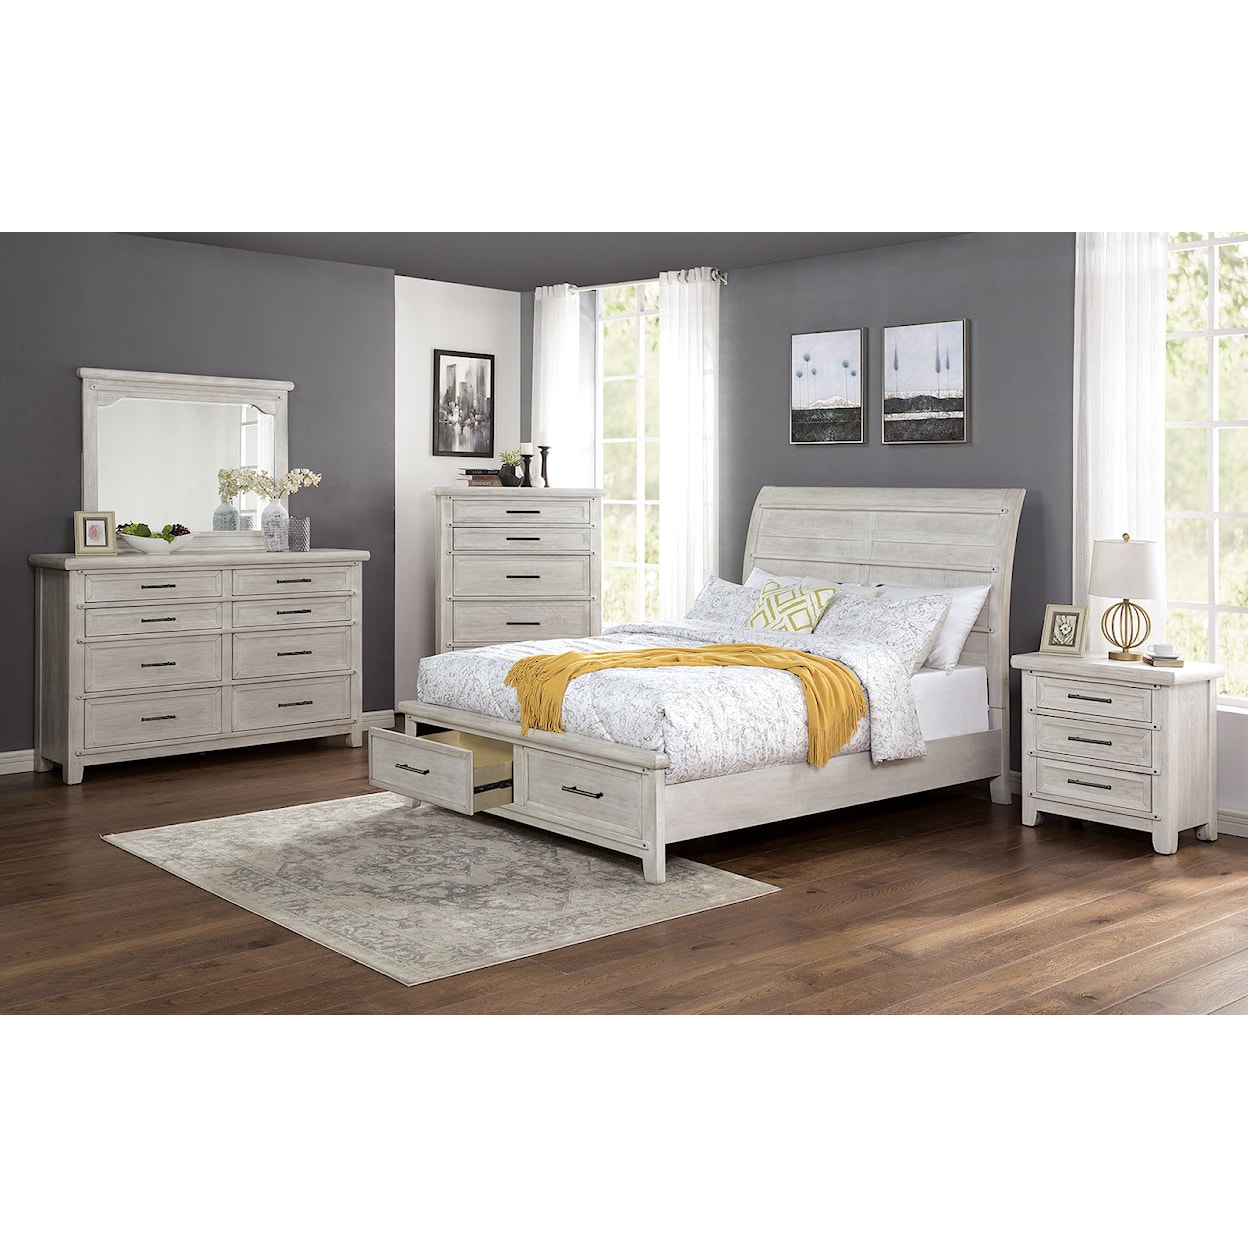 Furniture of America Shawnette 4-Piece Queen Bedroom Set